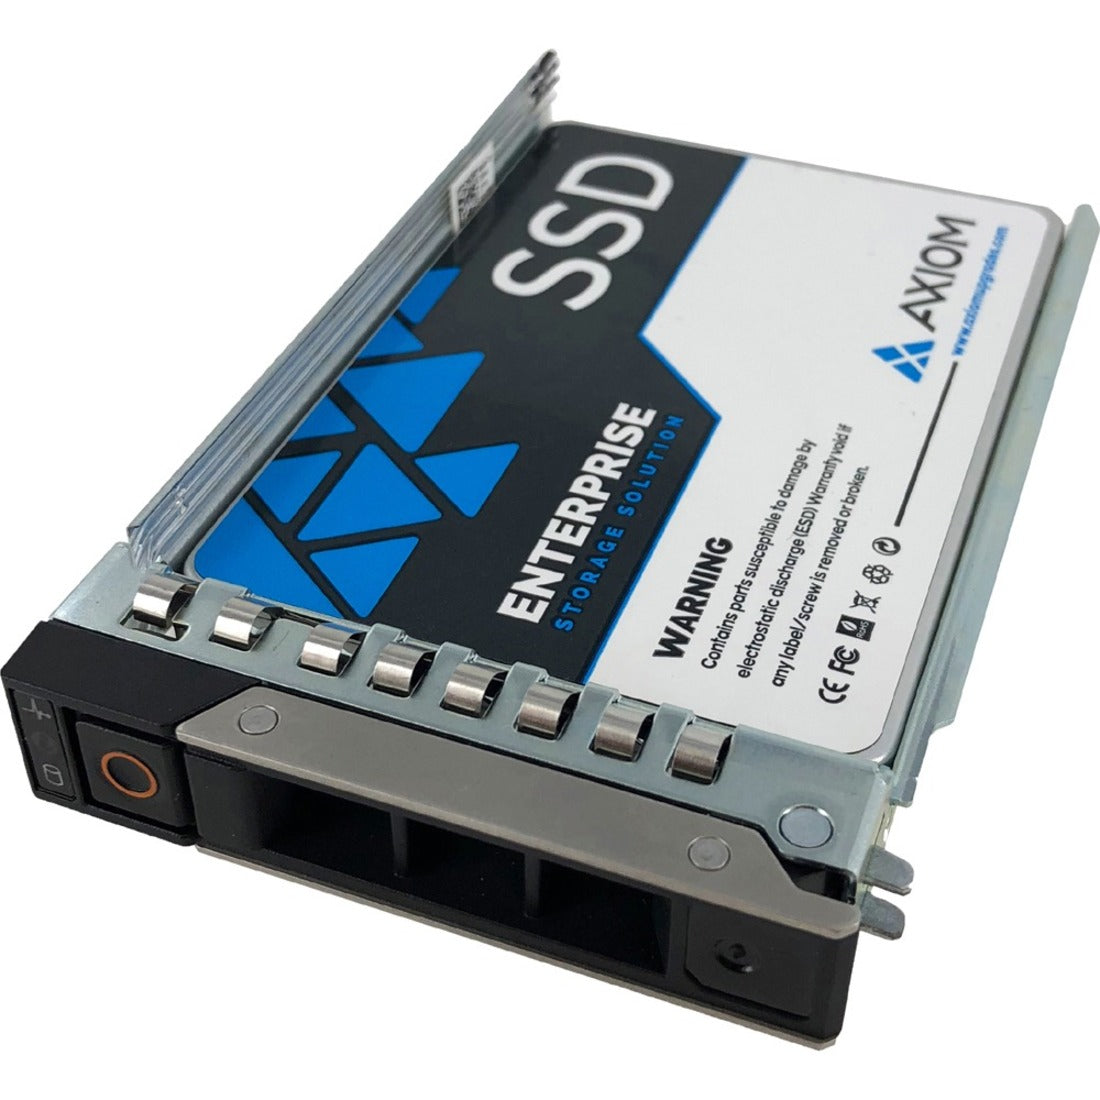 Axiom SSDEV20DX480-AX 480GB Enterprise EV200 2.5-inch Hot-Swap SATA SSD, 5 Year Warranty, Mixed Use Endurance